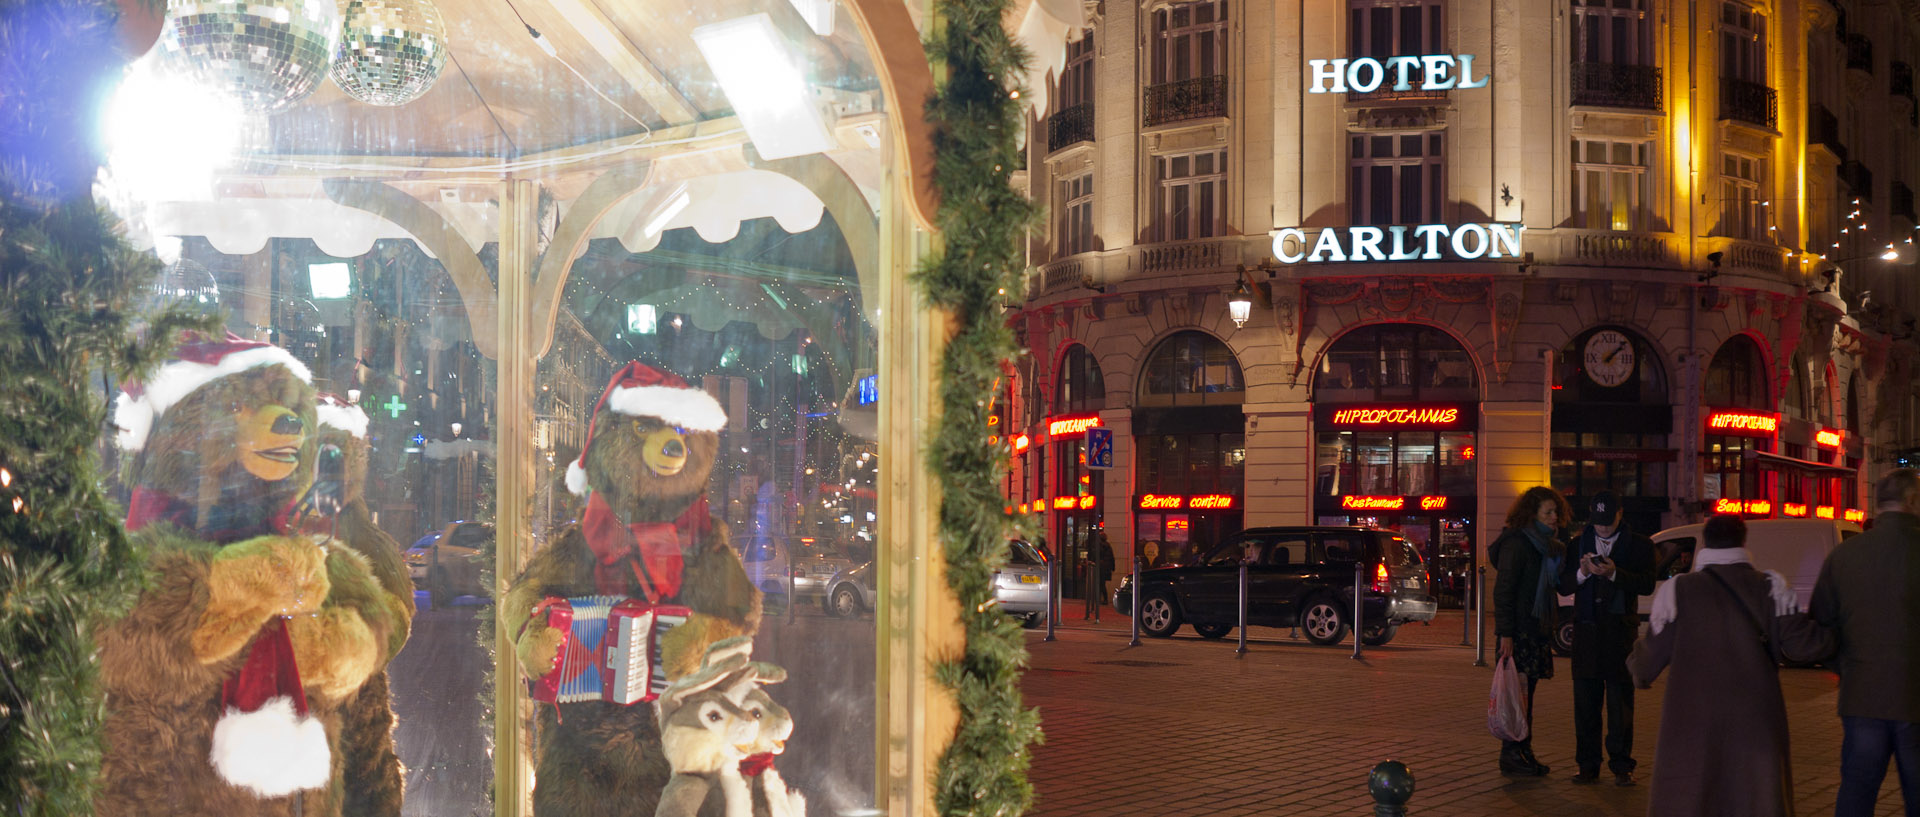 Décorations de Noël autour de l'hôtel Carlton, place du Théâtre, à Lille.